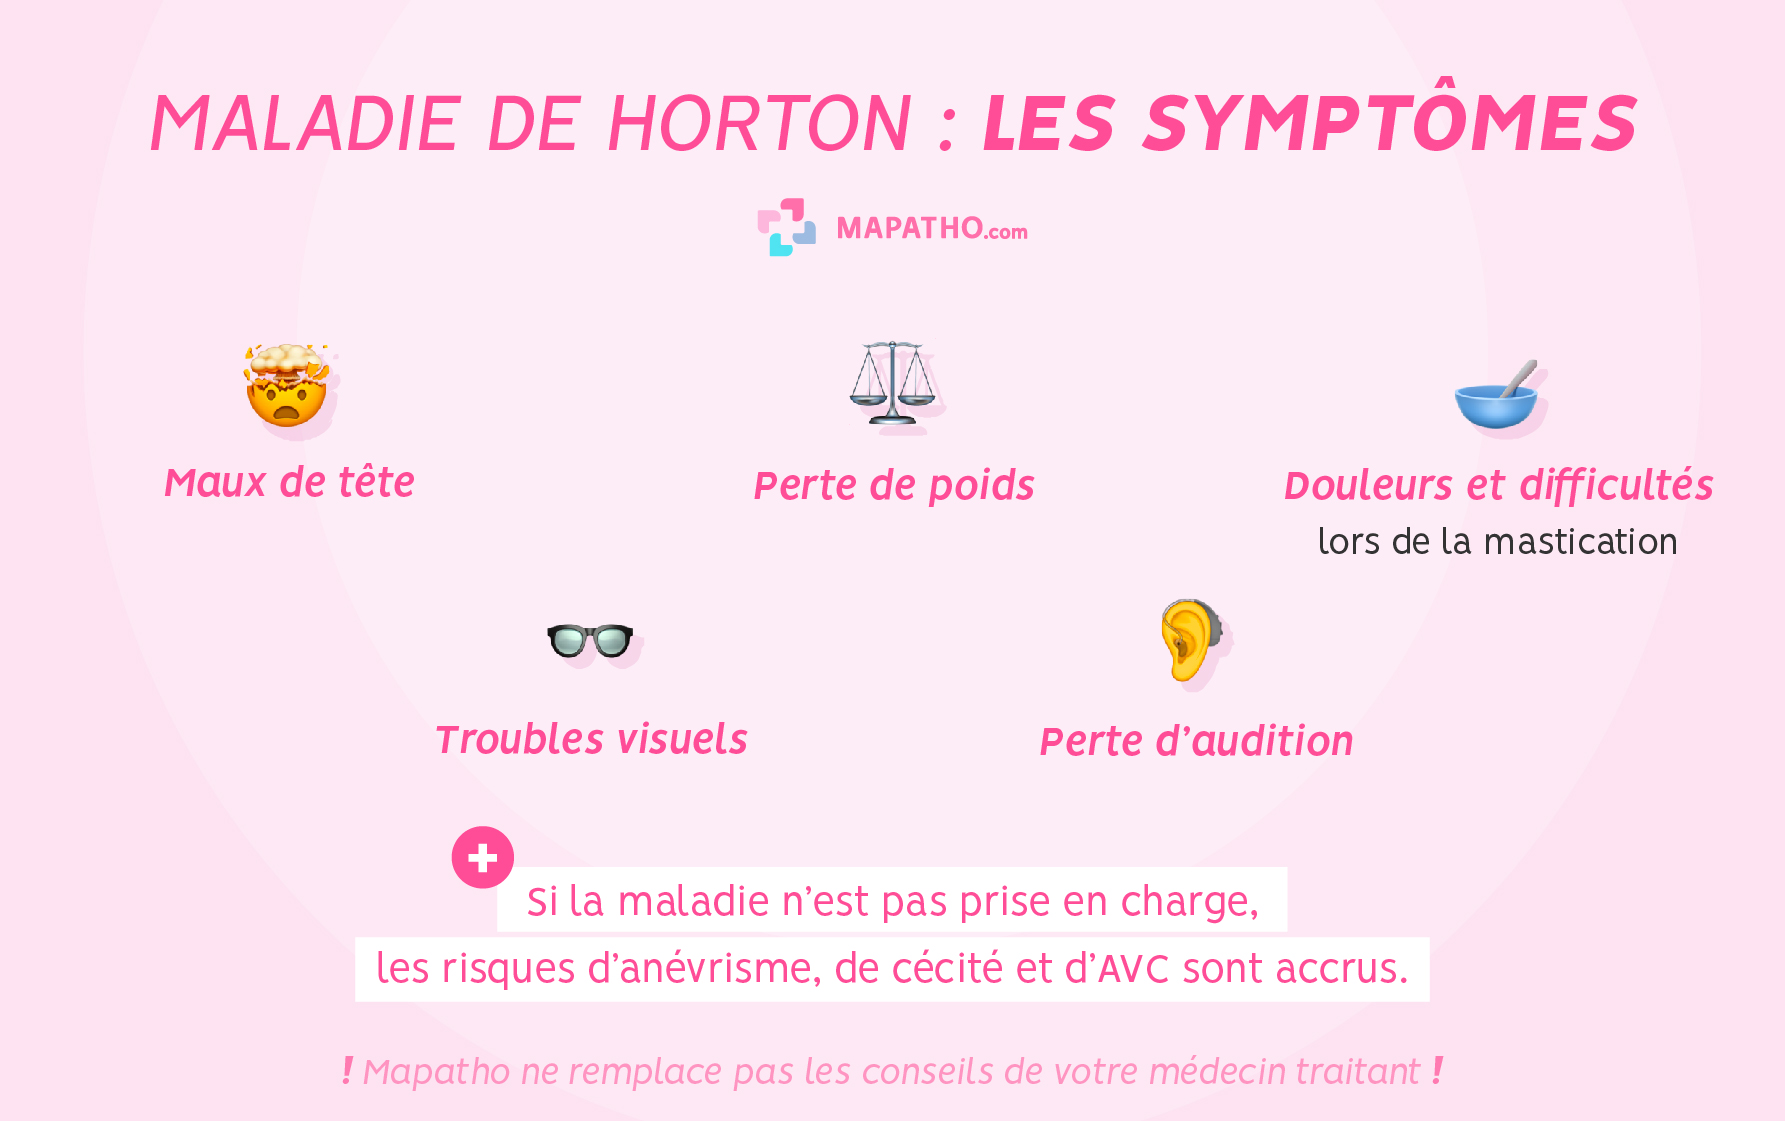 Les symptômes de la maladie de Horton